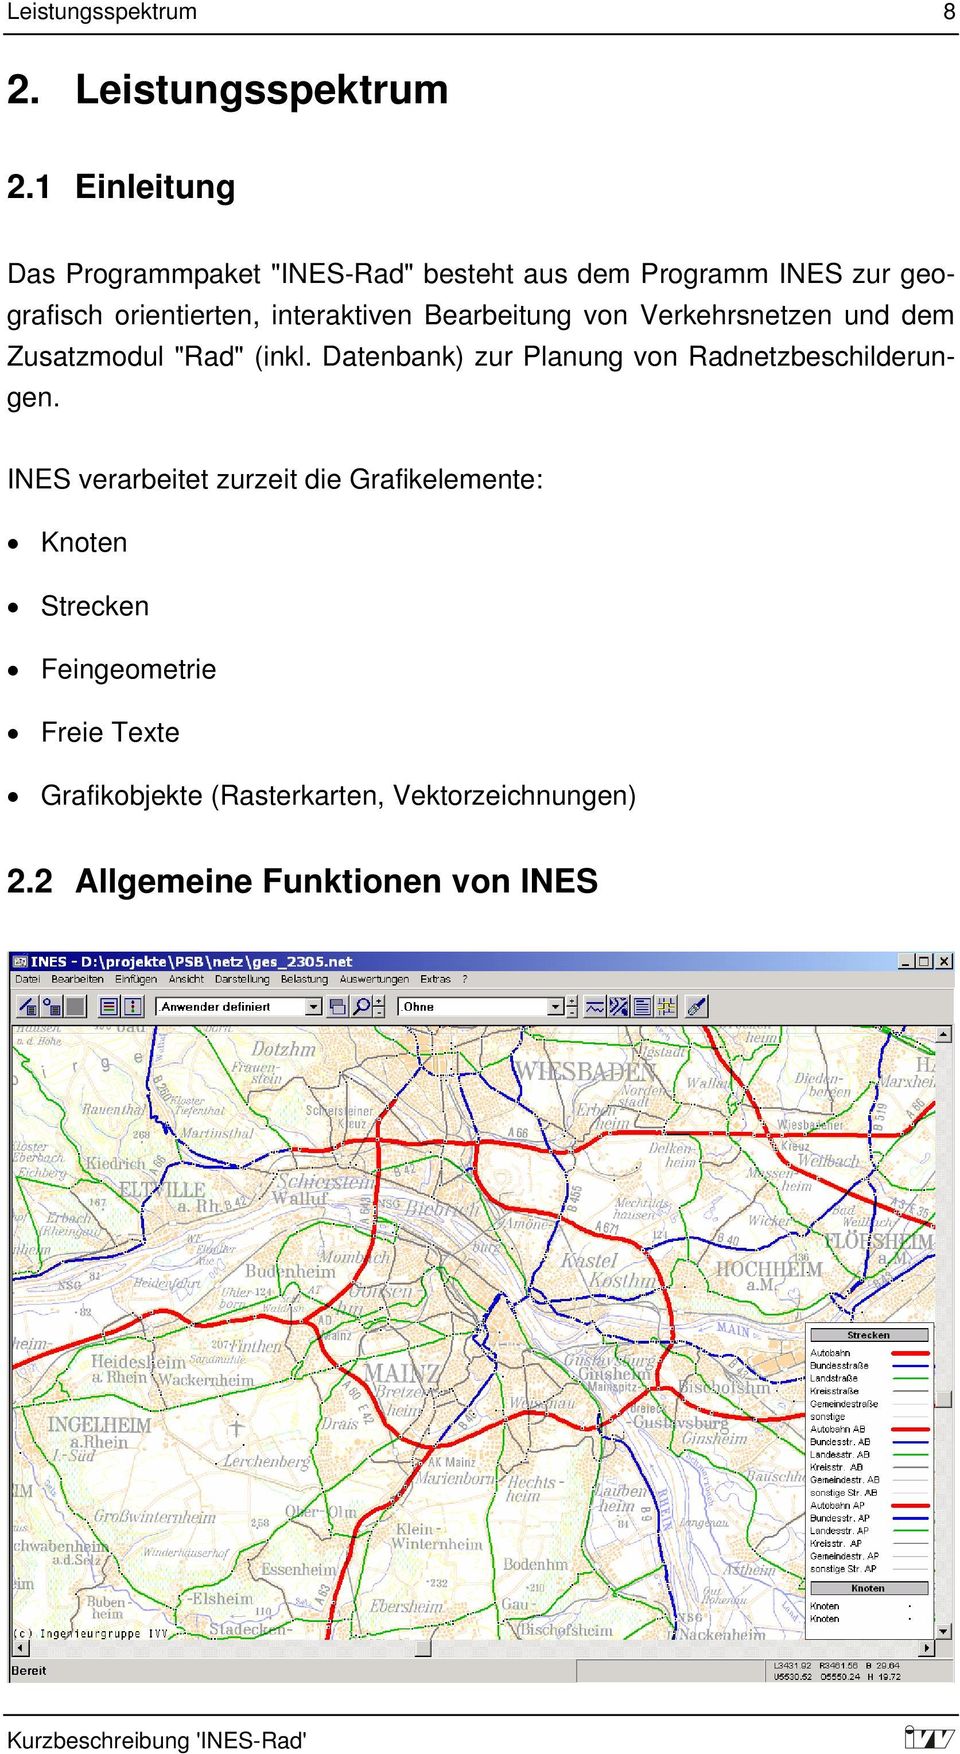 interaktiven Bearbeitung von Verkehrsnetzen und dem Zusatzmodul "Rad" (inkl.